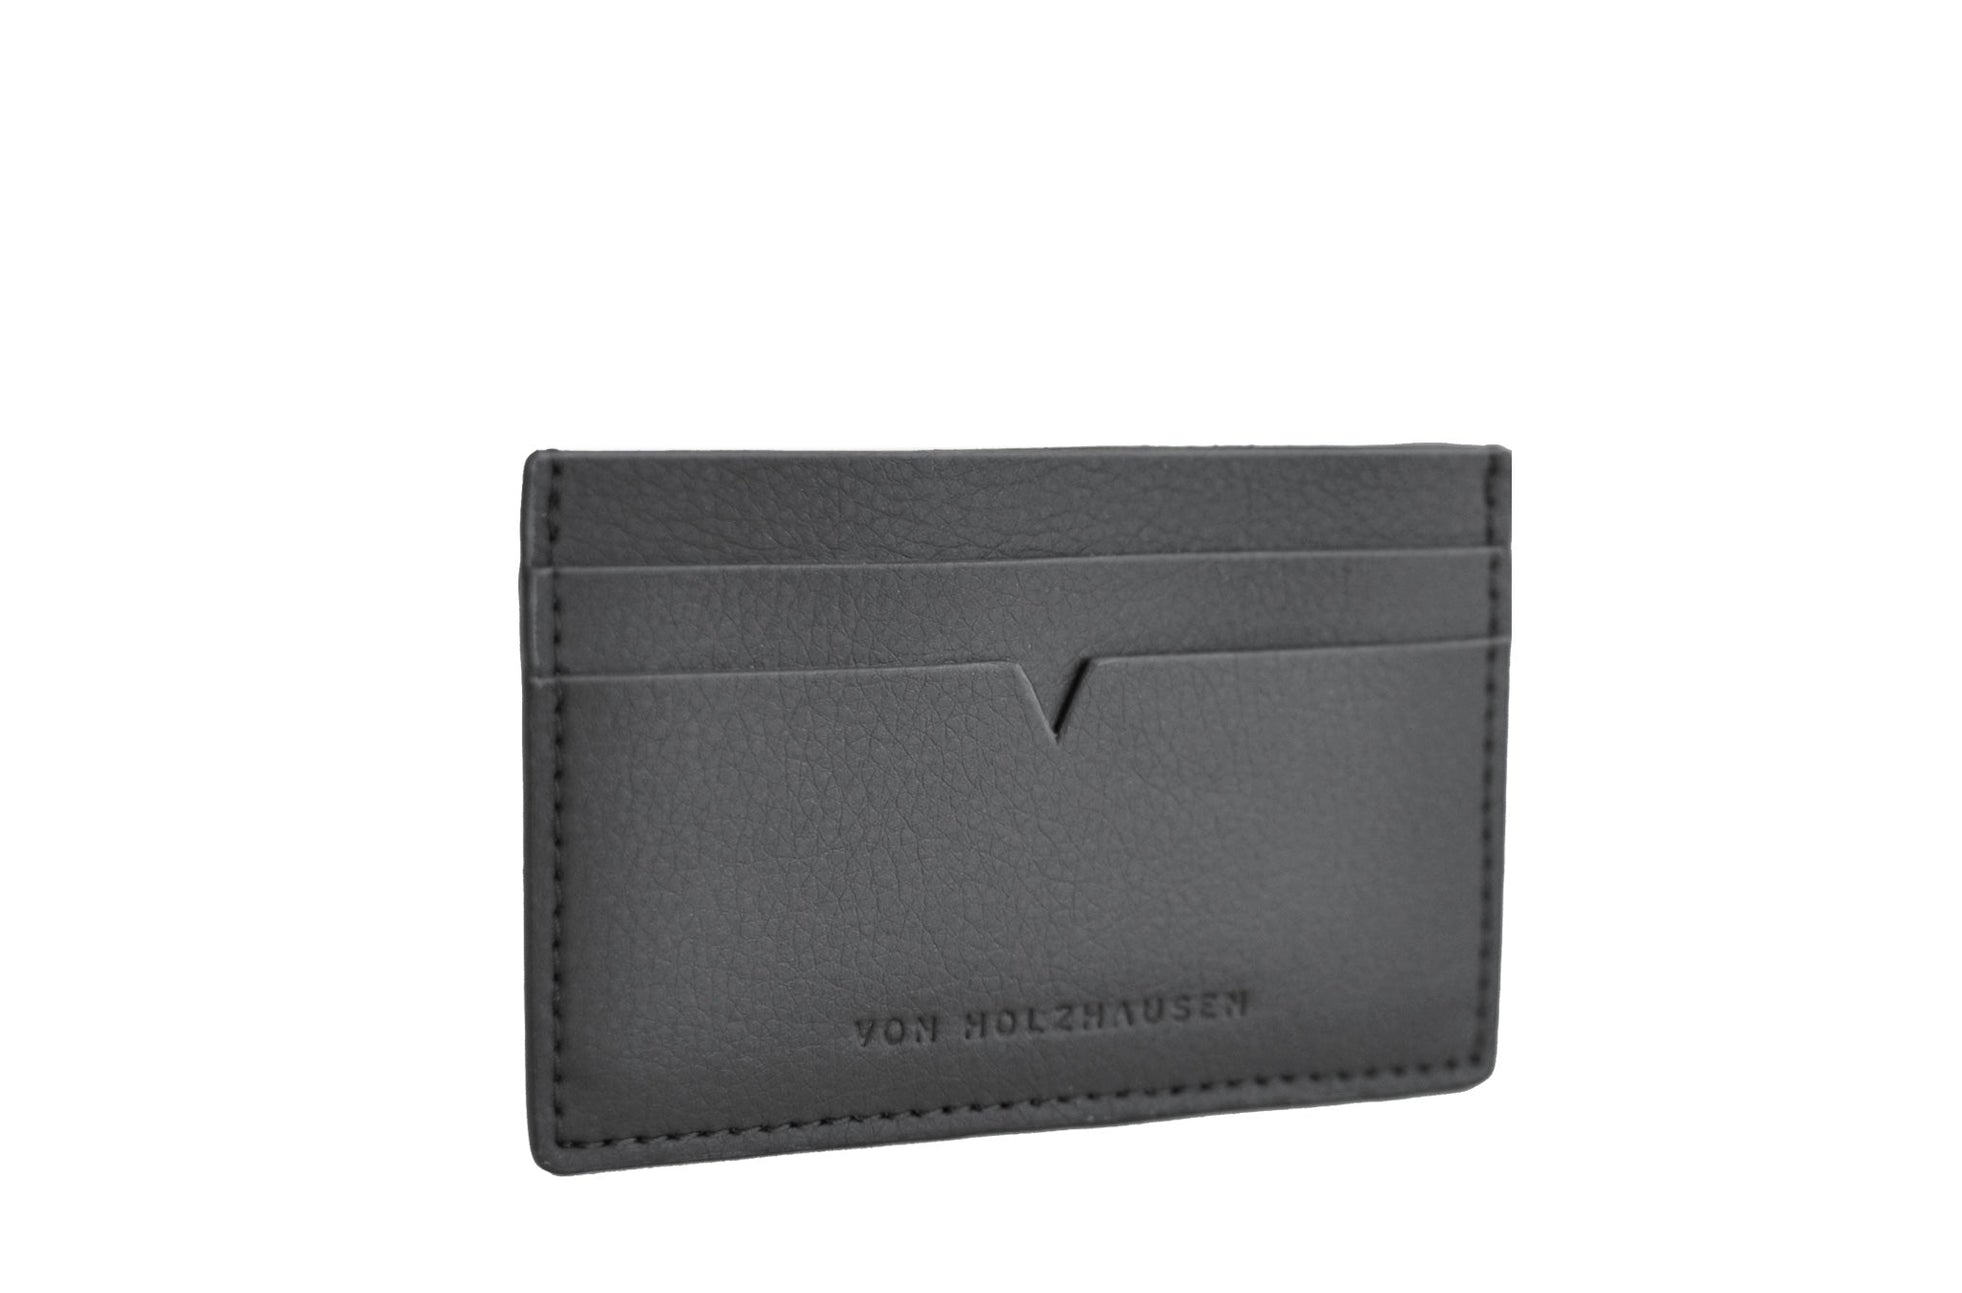 The Credit Card Holder - Sample Sale in Technik in Black image 